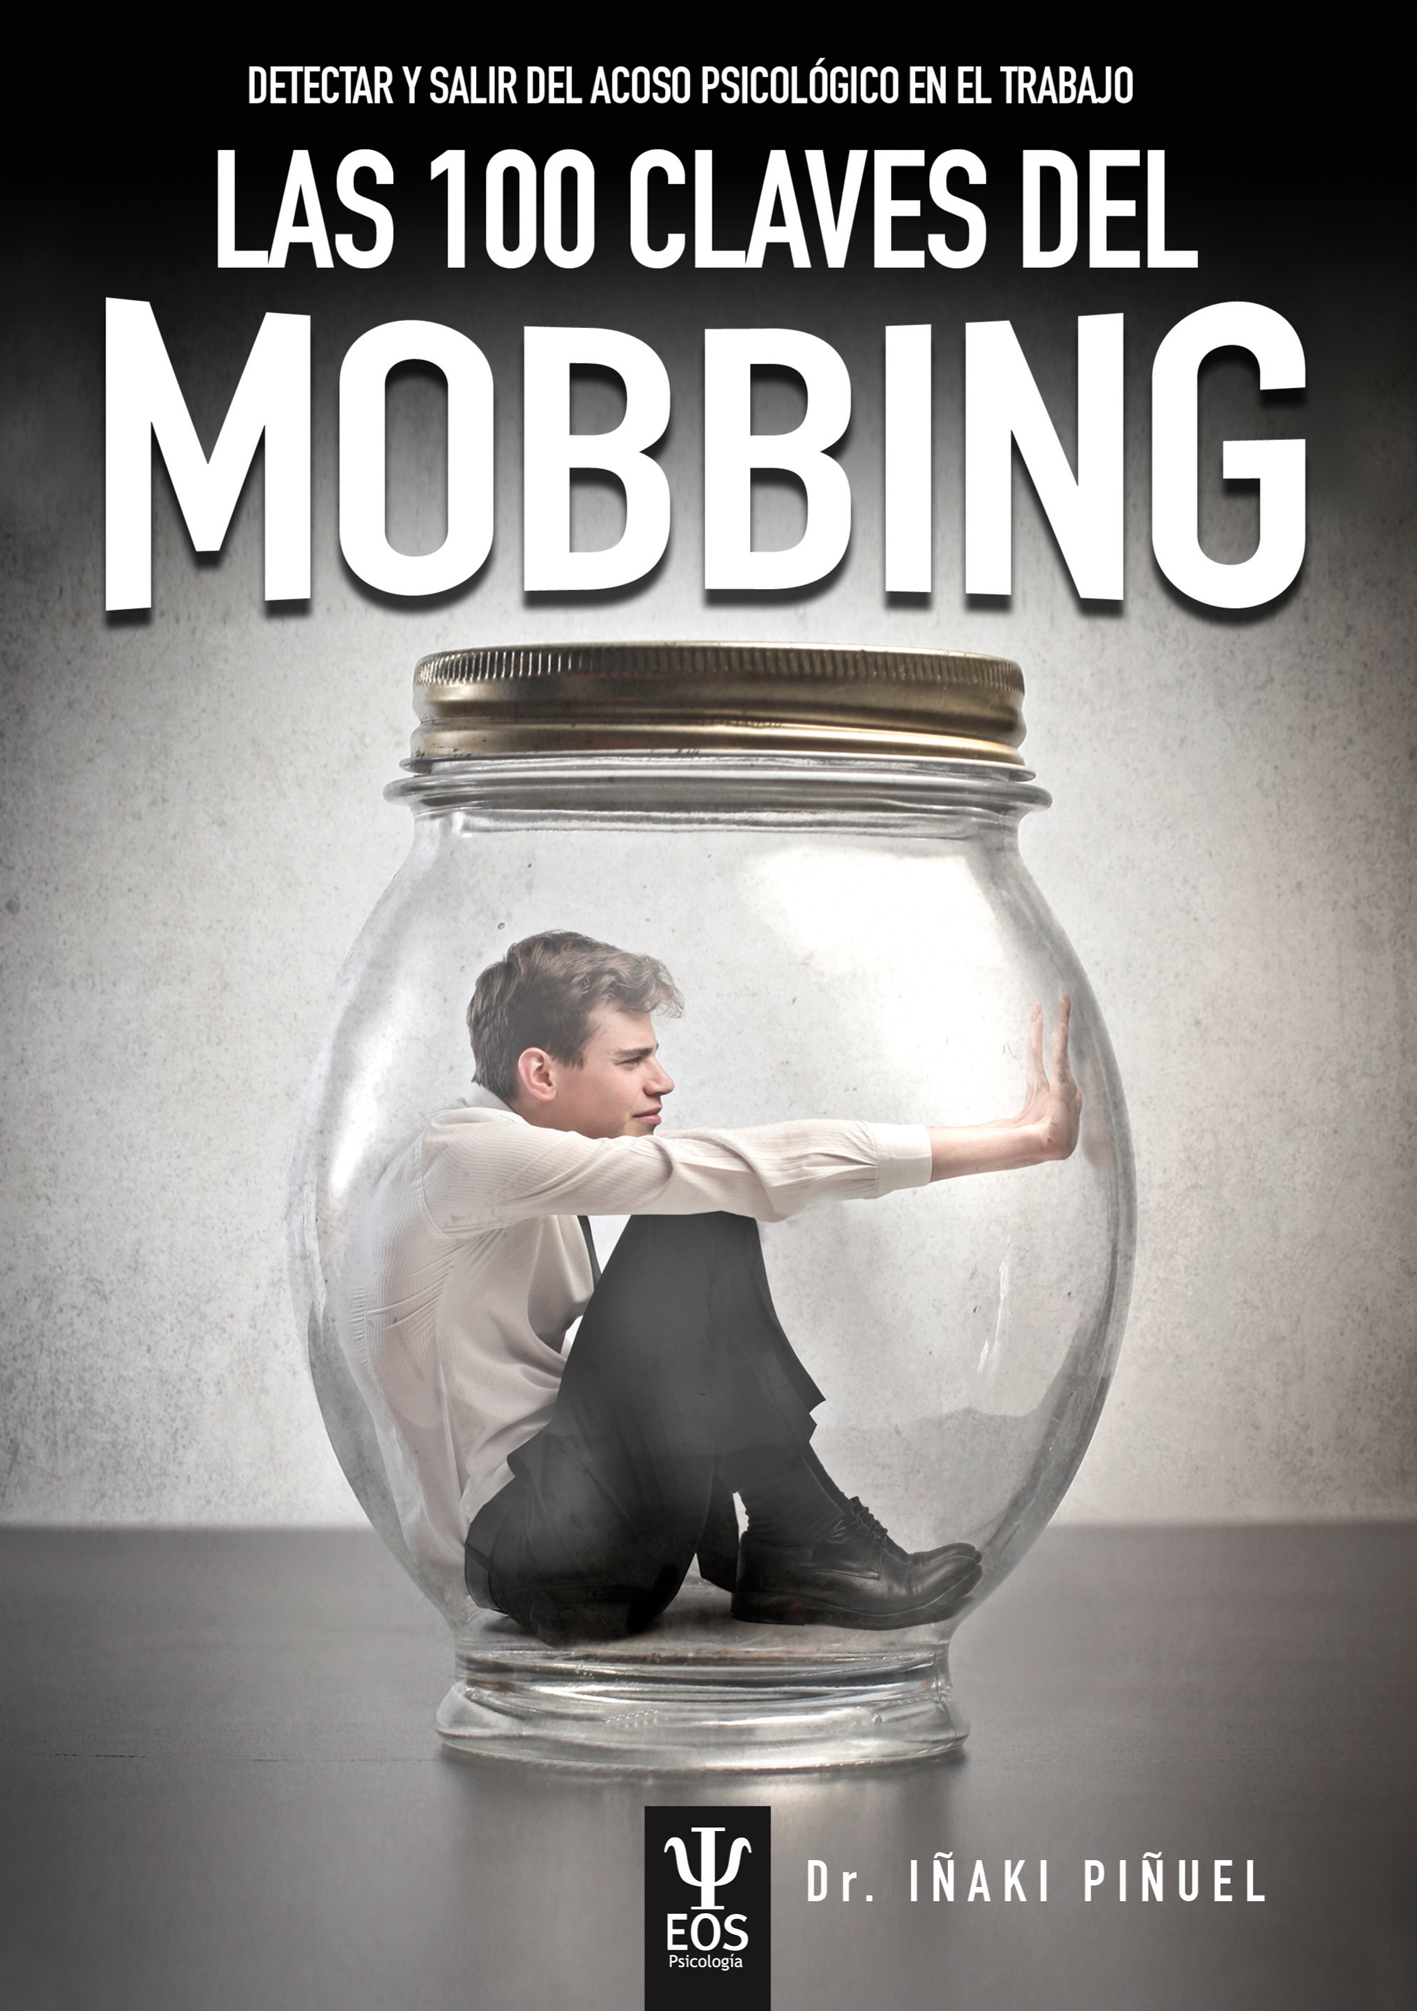 Las 100 claves del mobbing